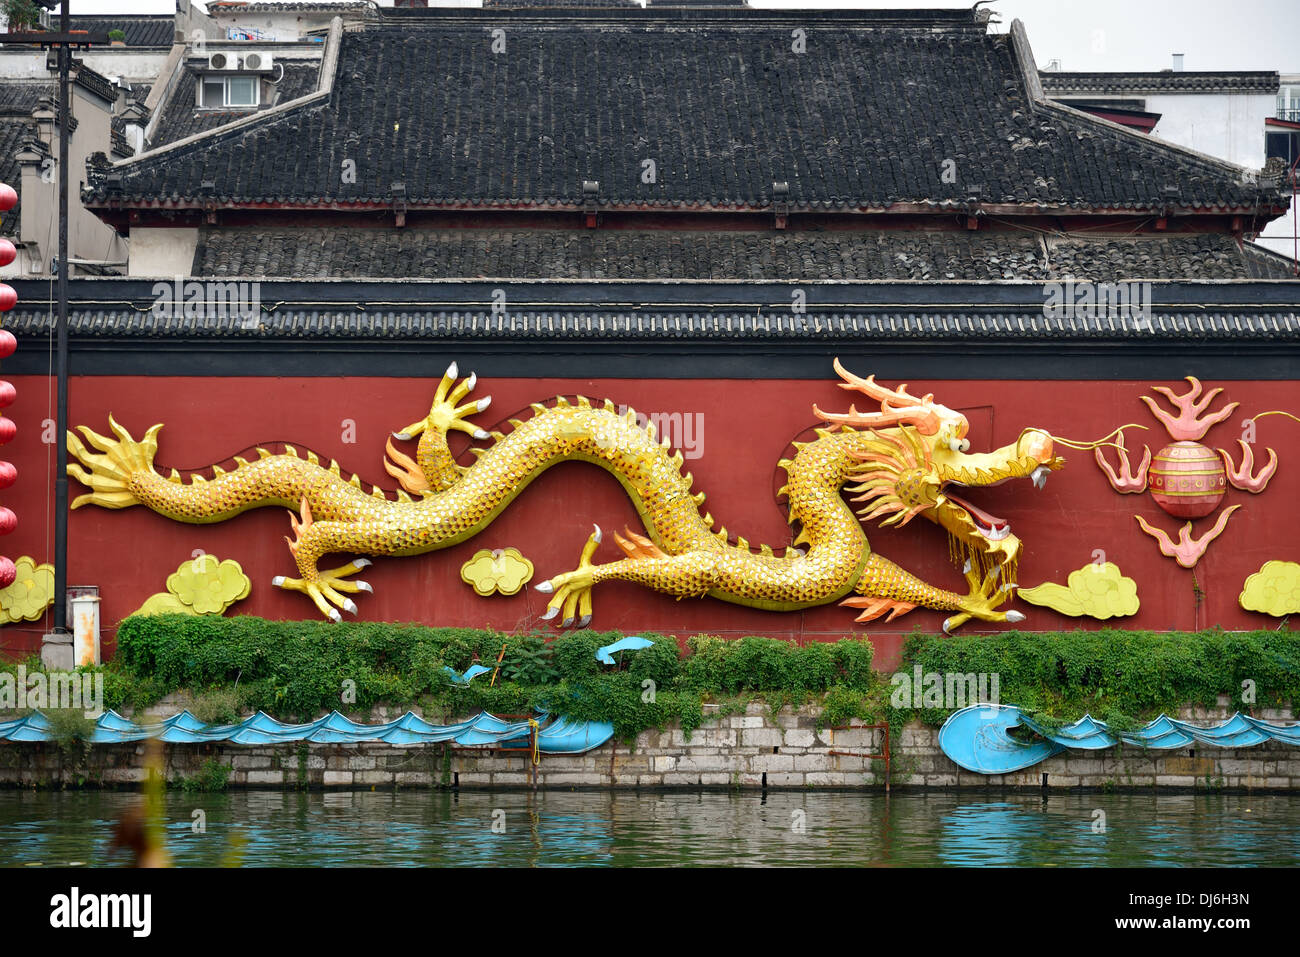 Golden dragon on a red wall by the Qinhuai River. Nanjing, Jiangsu Province, China. Stock Photo